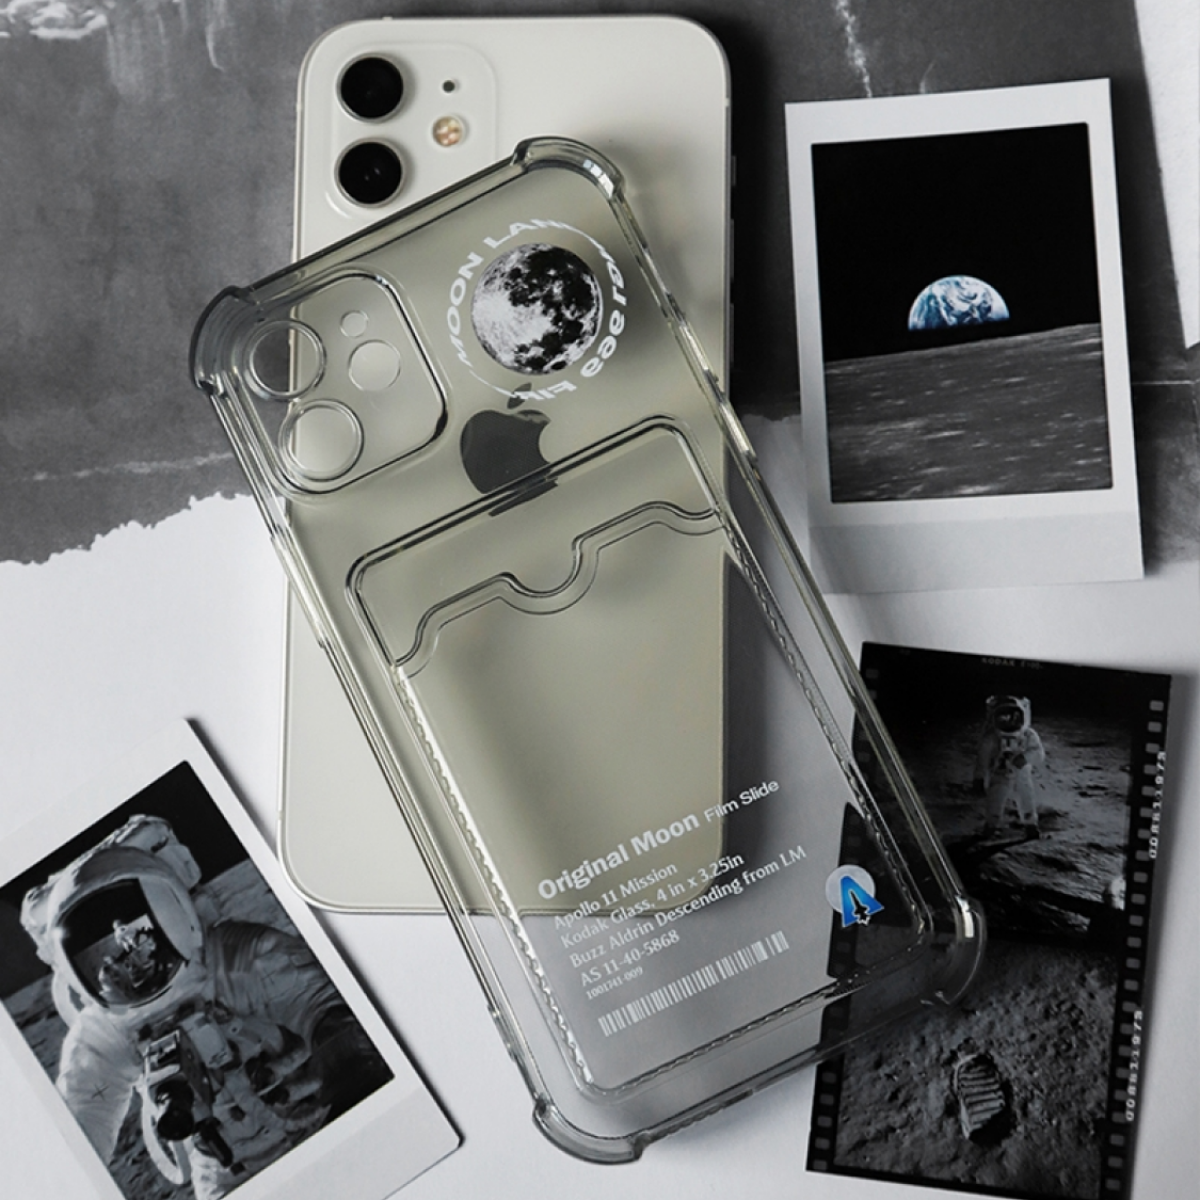 「月面着陸記念品」iPhone対応スマホケース｜人類の小さな一歩、スマホケースの大きな飛躍|undefined